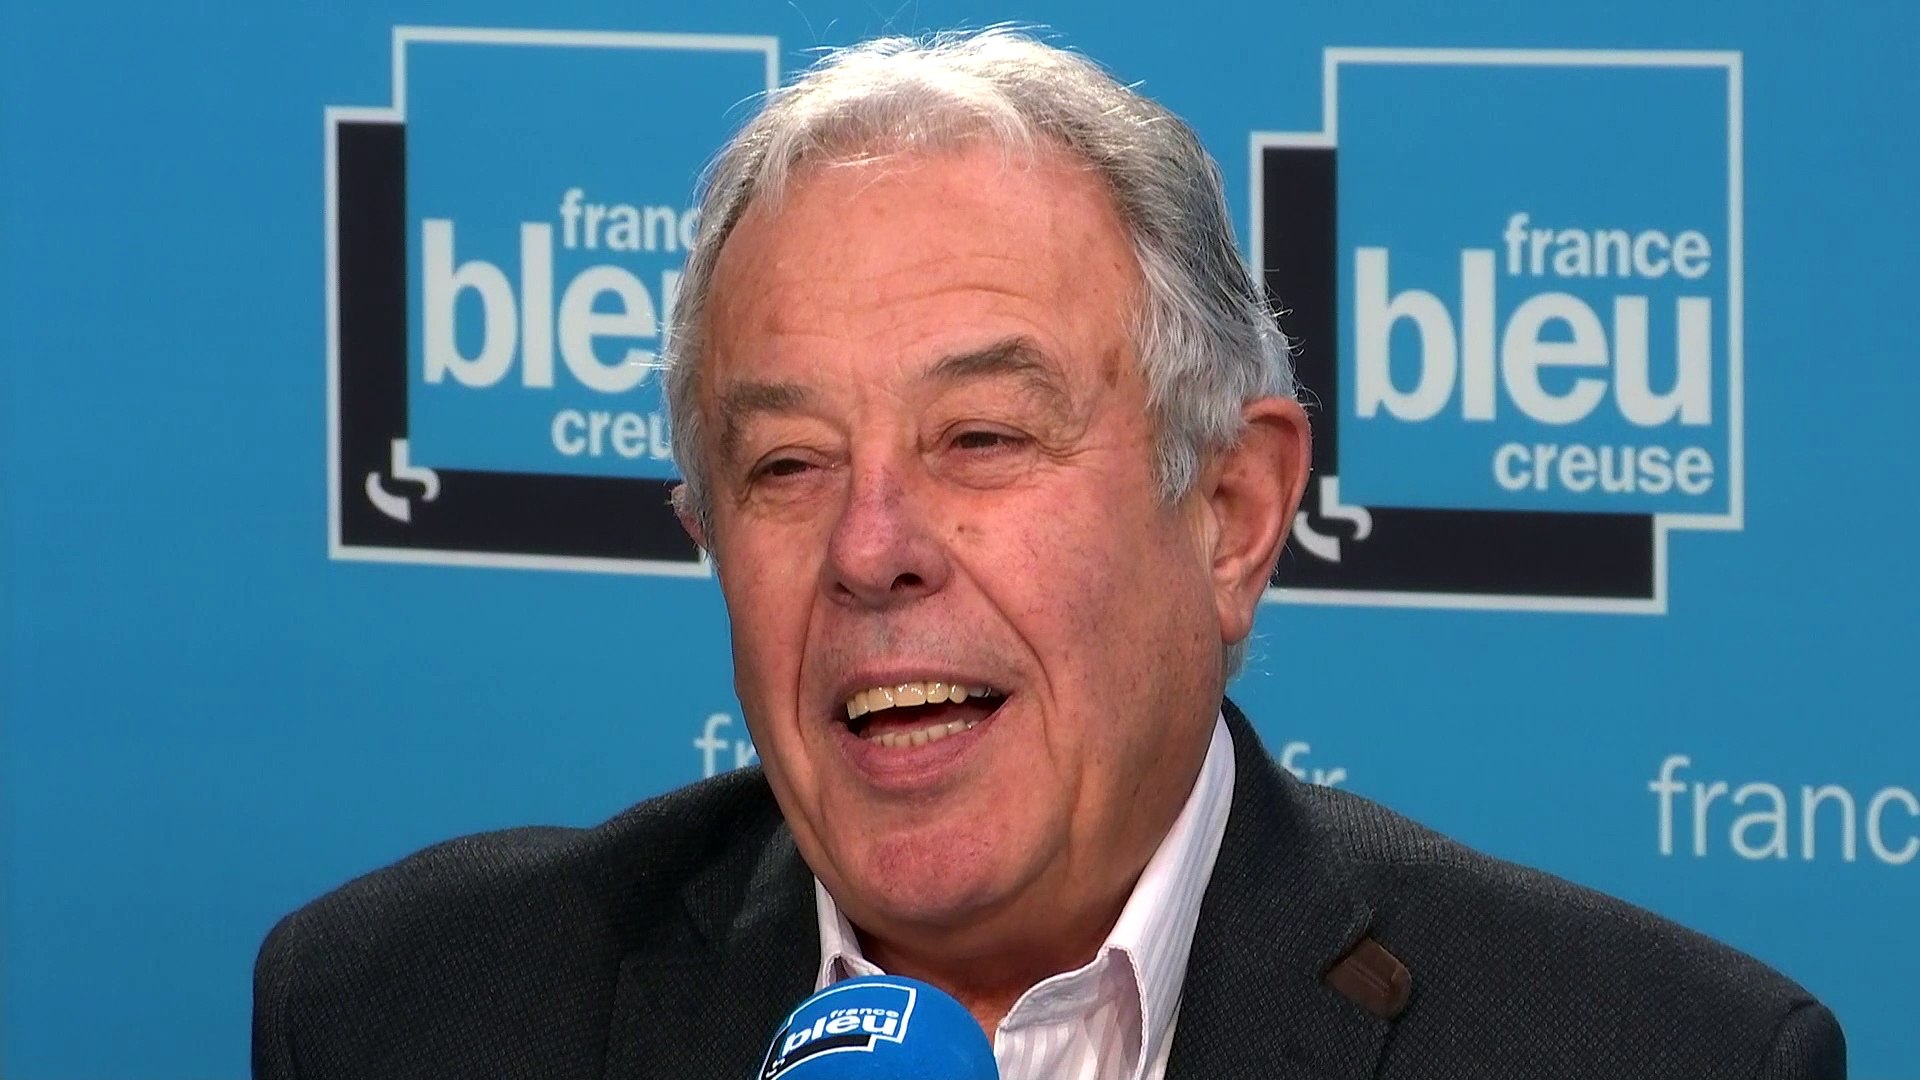 Jean Auclair veut devenir le prochain maire d'Aubusson - Vidéo Dailymotion